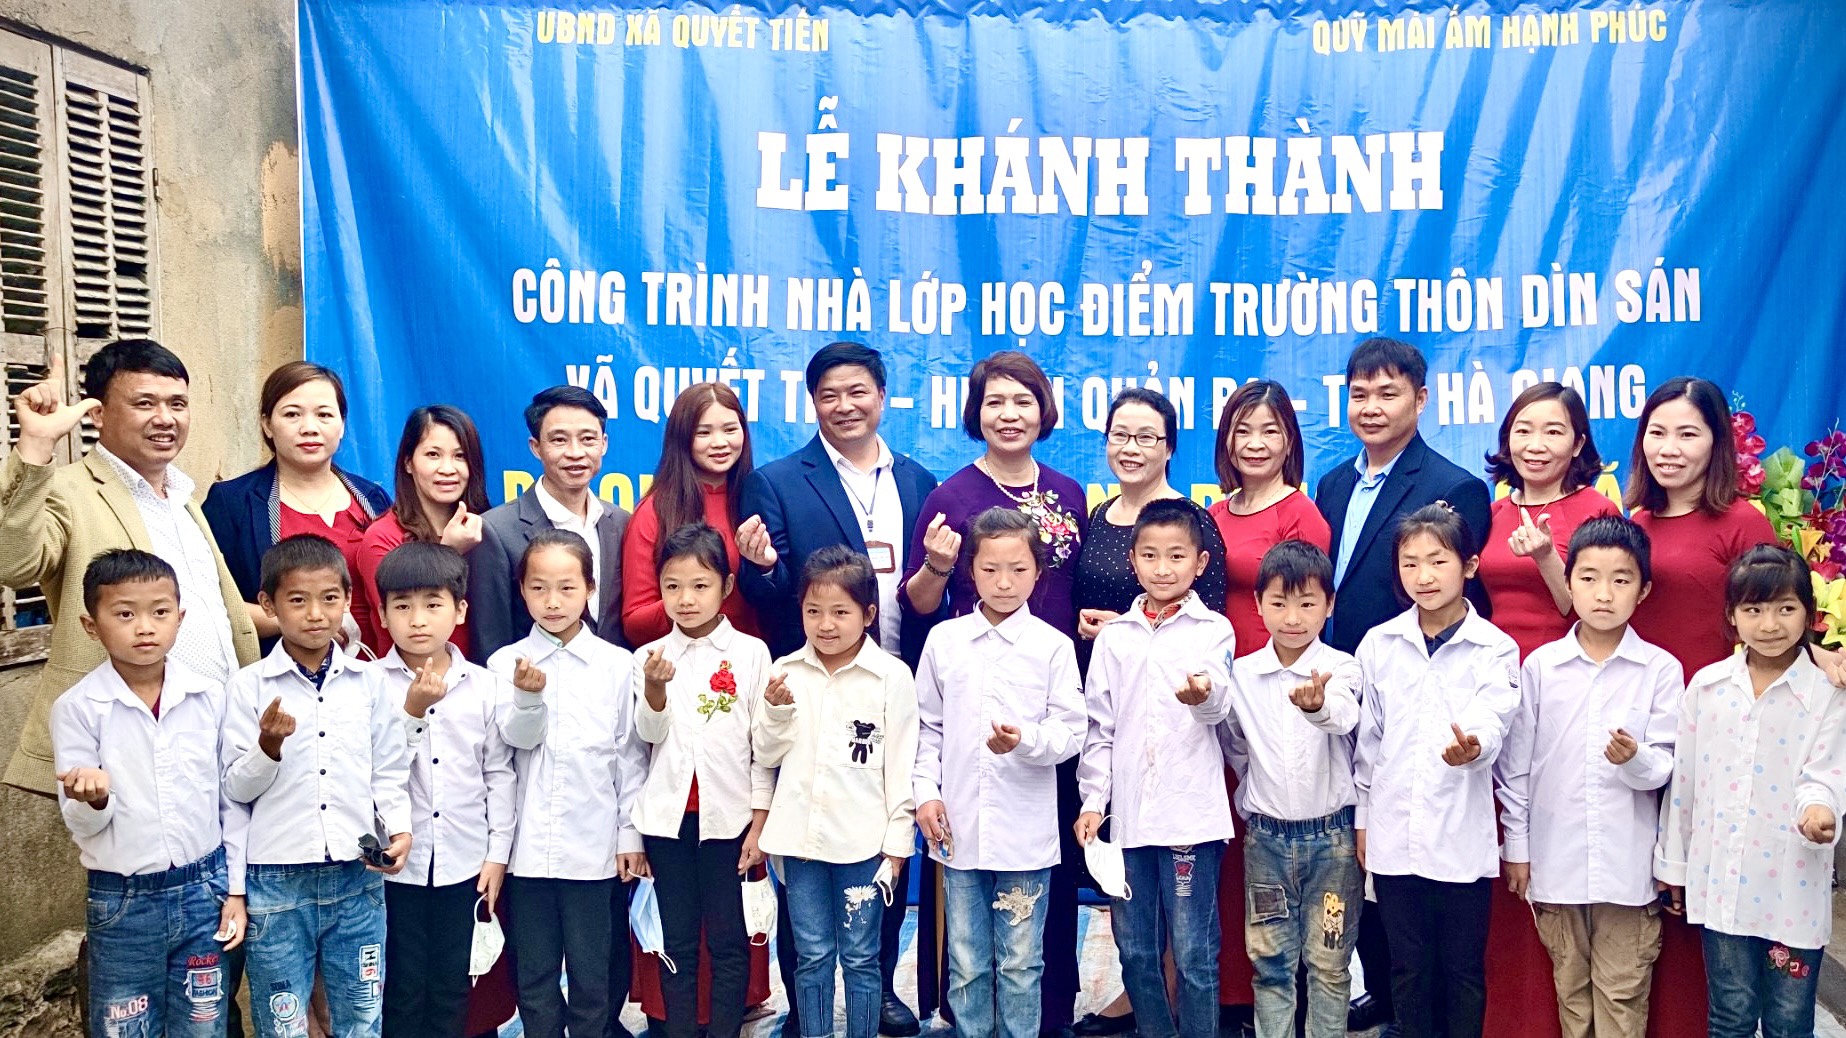 Bà Nguyễn Thị Tố Quyên cùng cán bộ, giáo viên và các em học sinh chụp hình lưu niệm ngày khánh thành điểm trường mới